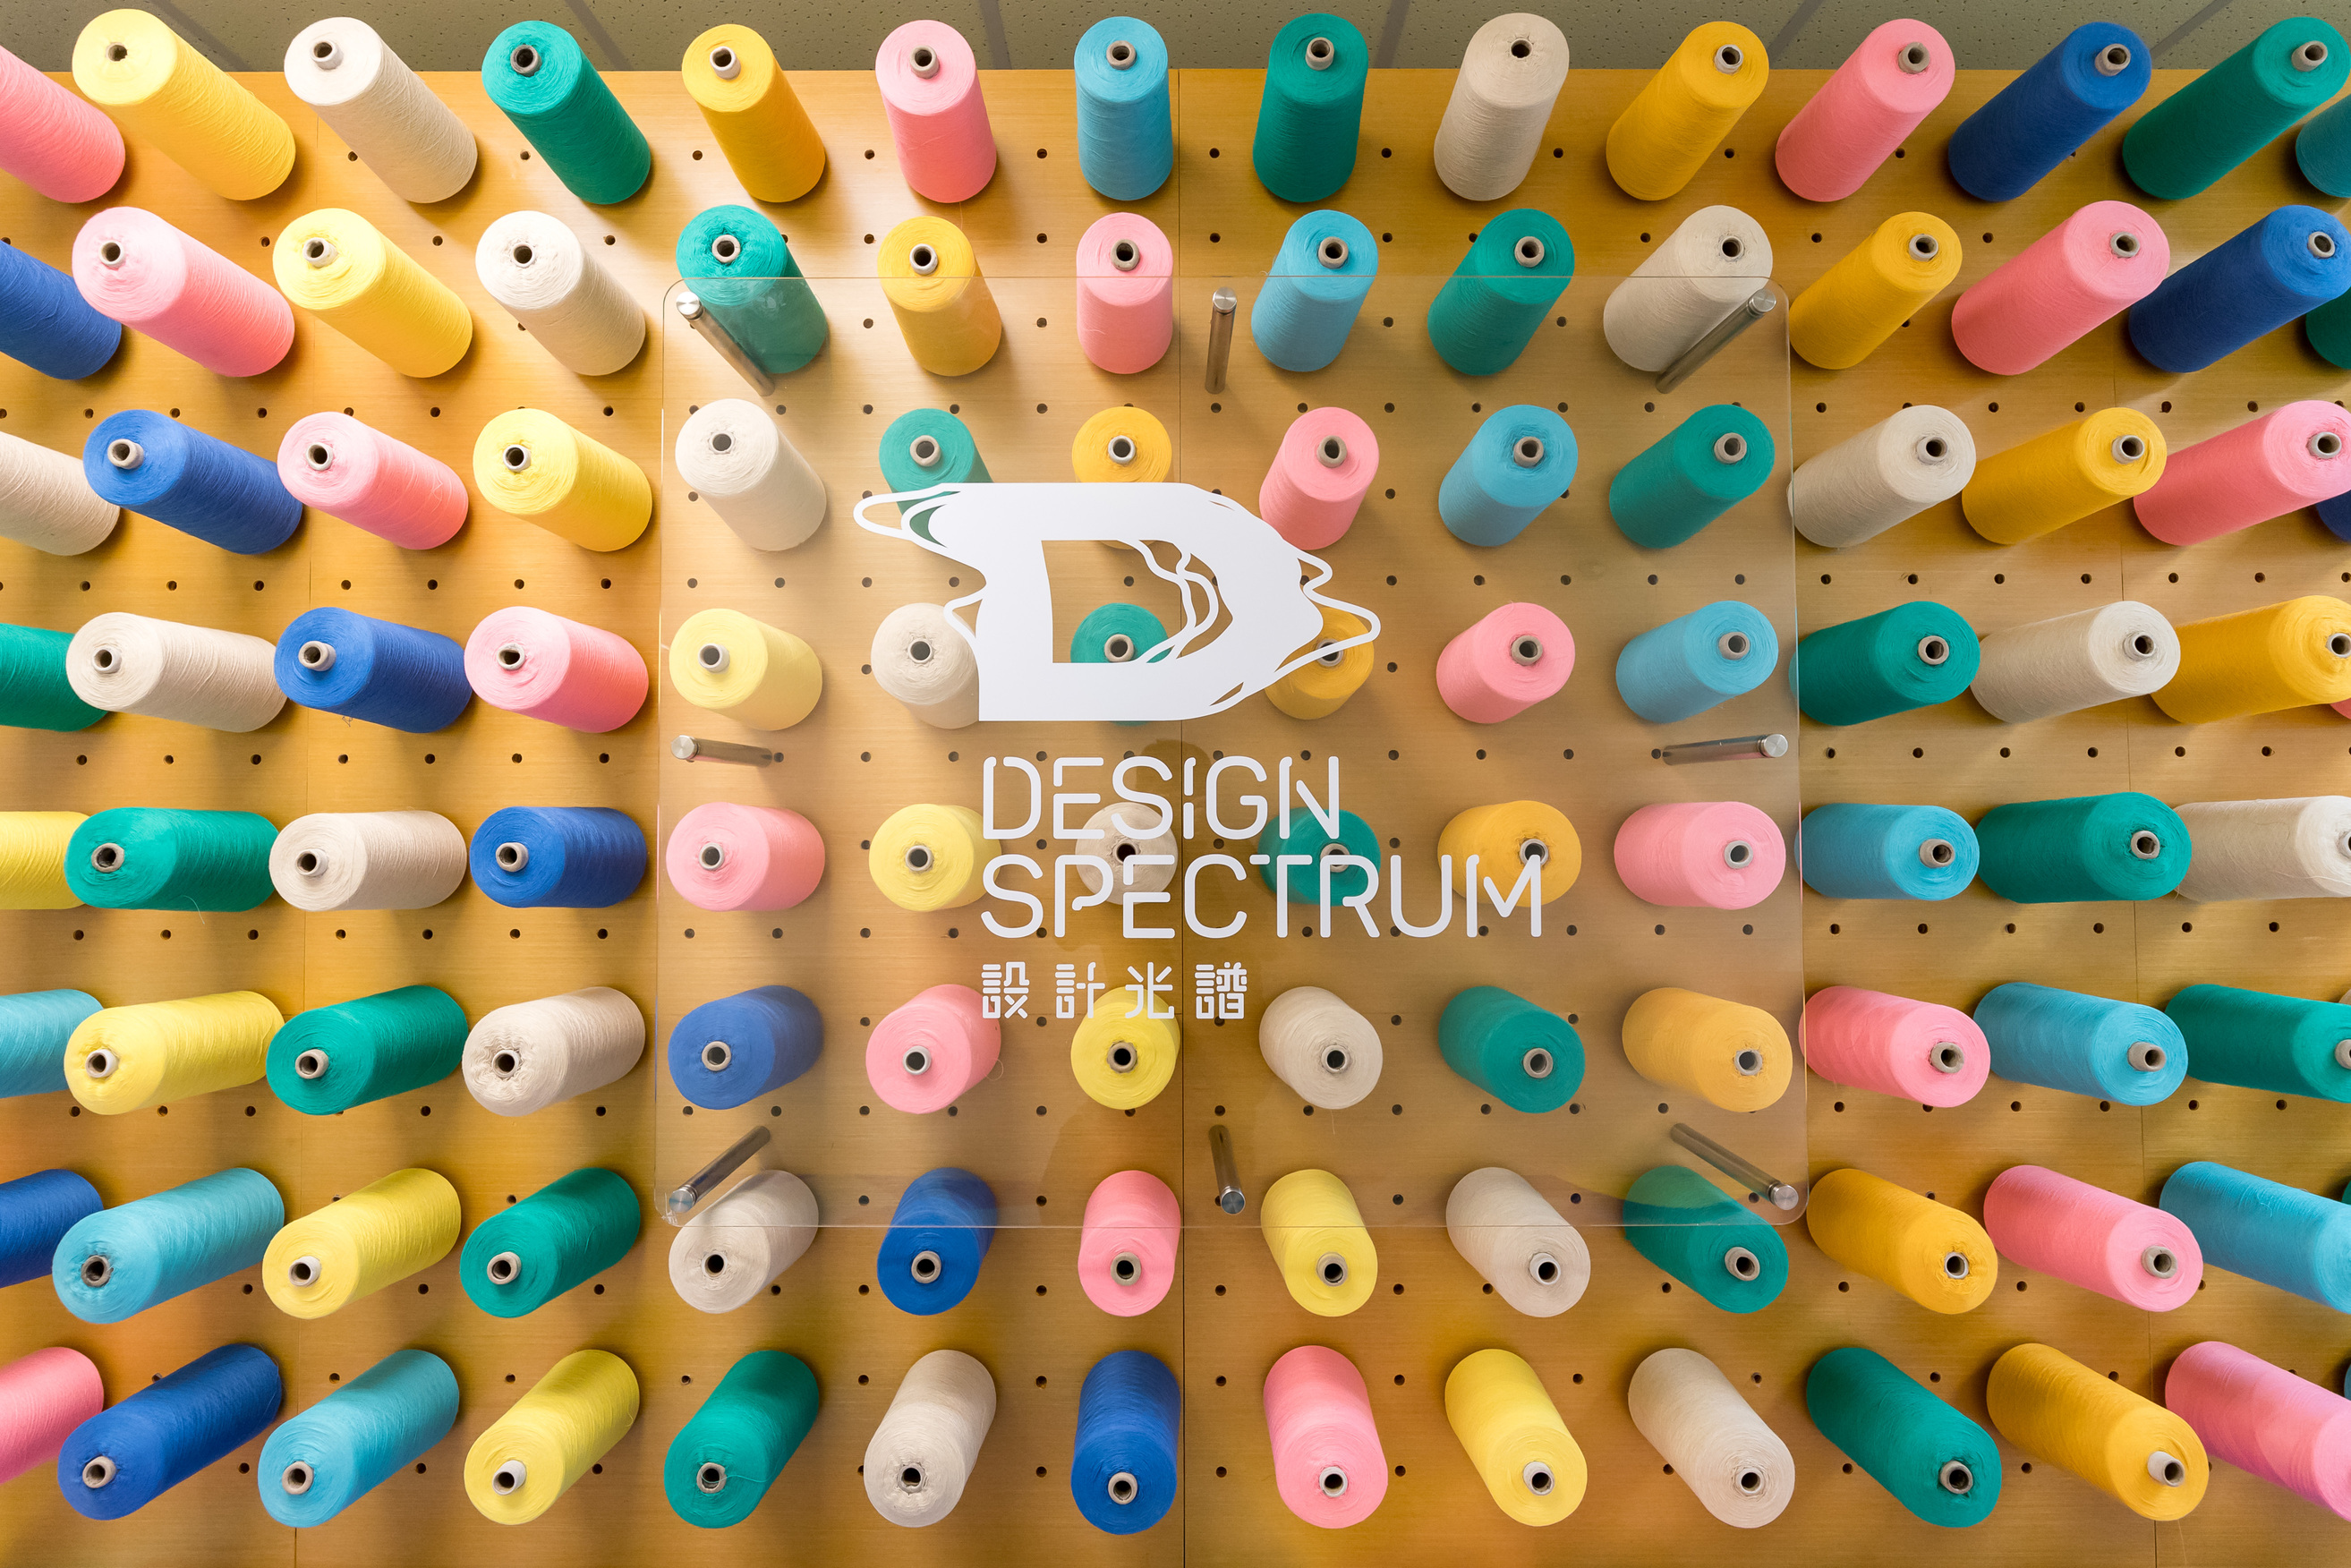 Design Spectrum - The Full Gamut Exhibition